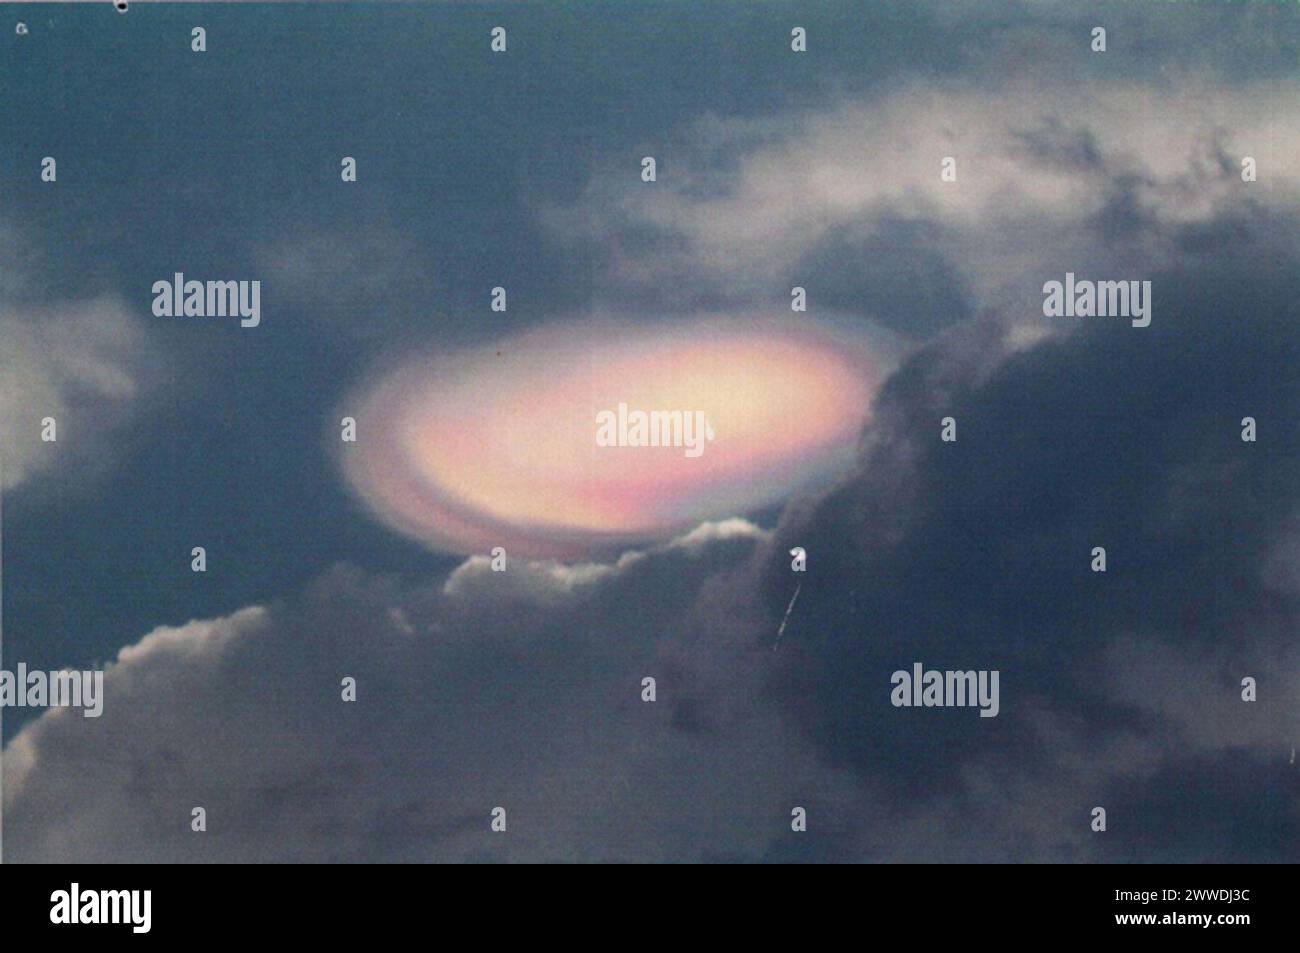 Nahaufnahme des Lichts am Himmel, Sri Lanka Beschreibung: Foto eines ungewöhnlichen atmosphärischen Ereignisses, das über Sri Lanka beobachtet wurde, an das Verteidigungsministerium weitergeleitet von der RAF Fylingdales. Datum: 27. März 2004 Himmel, Wolken, Ufos, Srilanka, Ministerialverteidigung Stockfoto